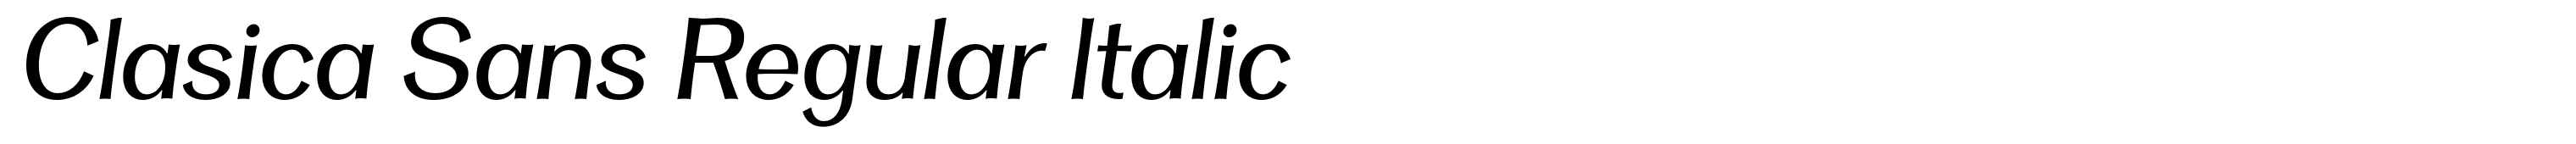 Clasica Sans Regular Italic